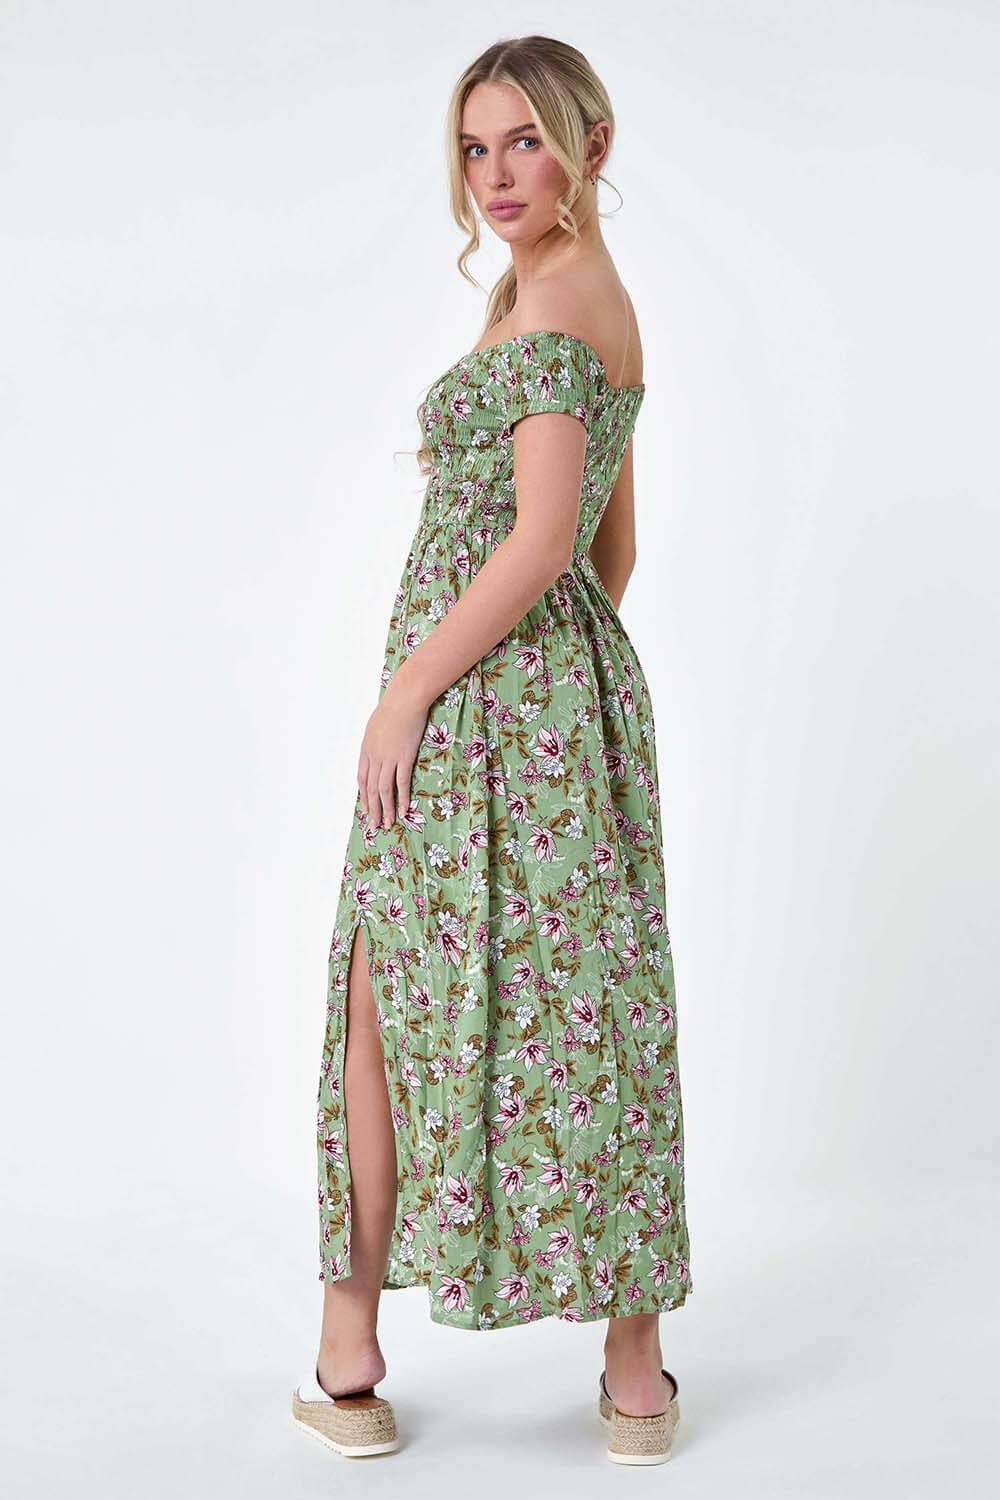 KHAKI Petite Floral Shirred Bardot Midi Dress, Image 3 of 5